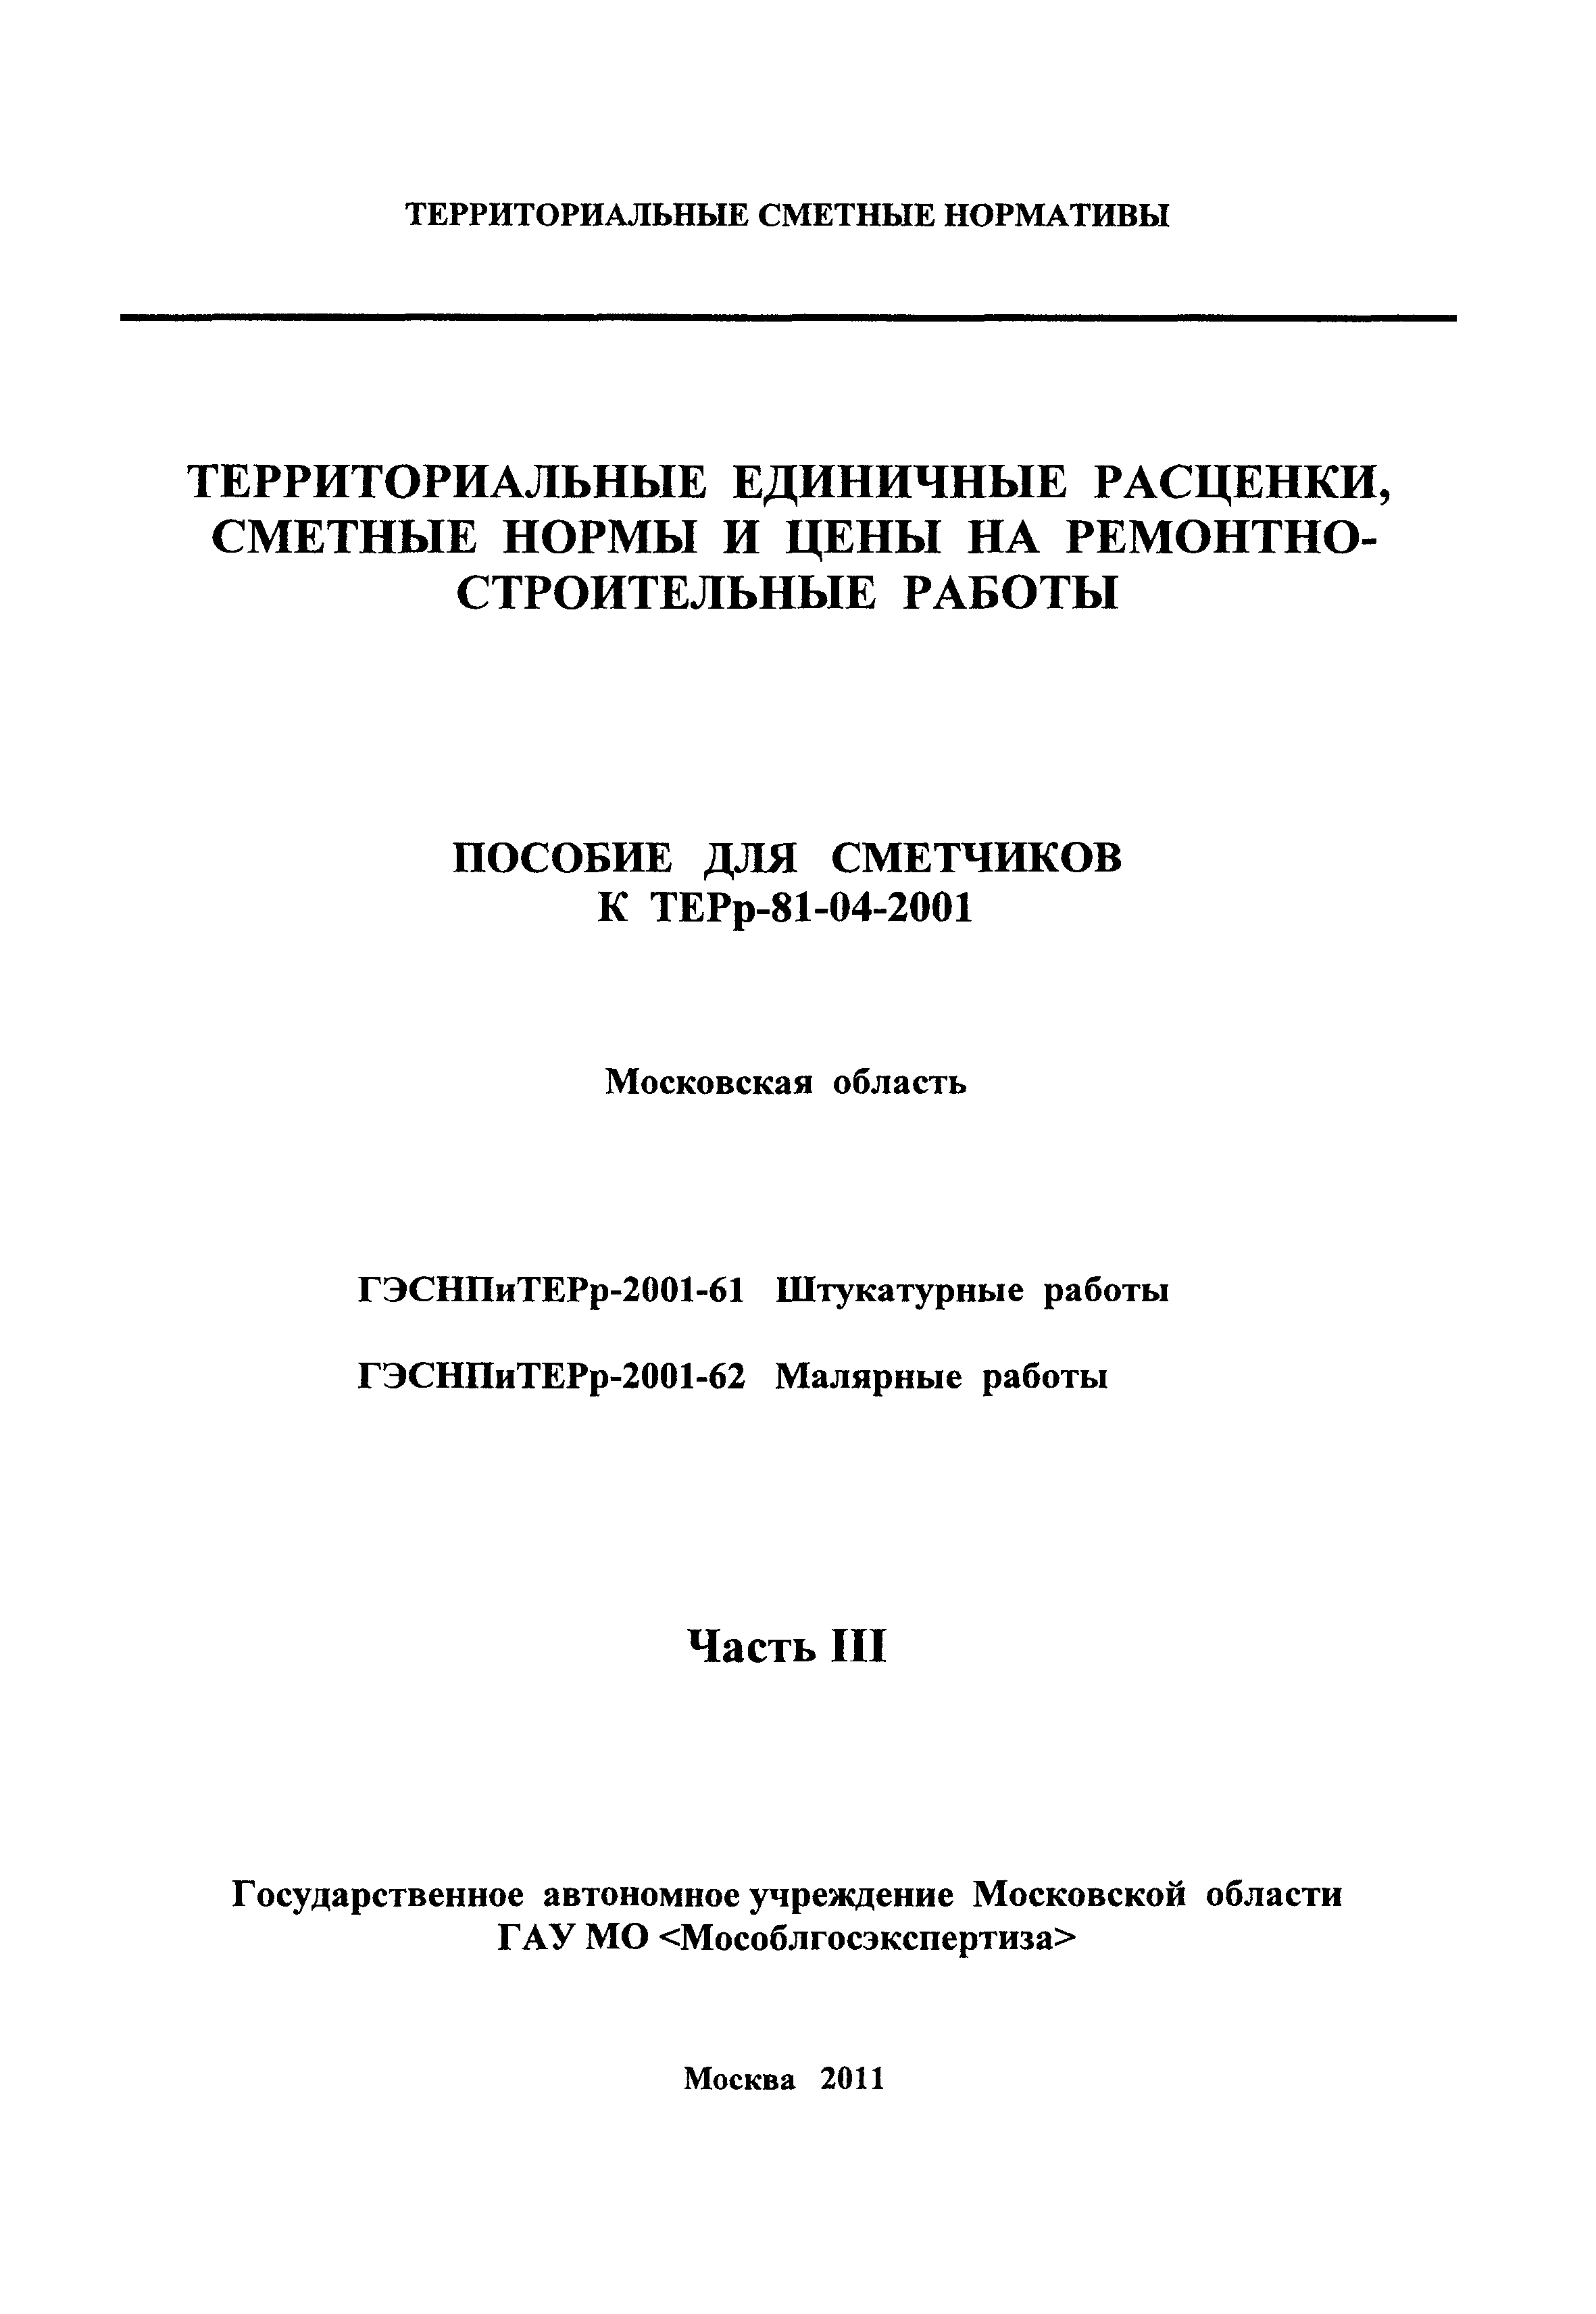 ГЭСНПиТЕРр 2001-62 Московской области